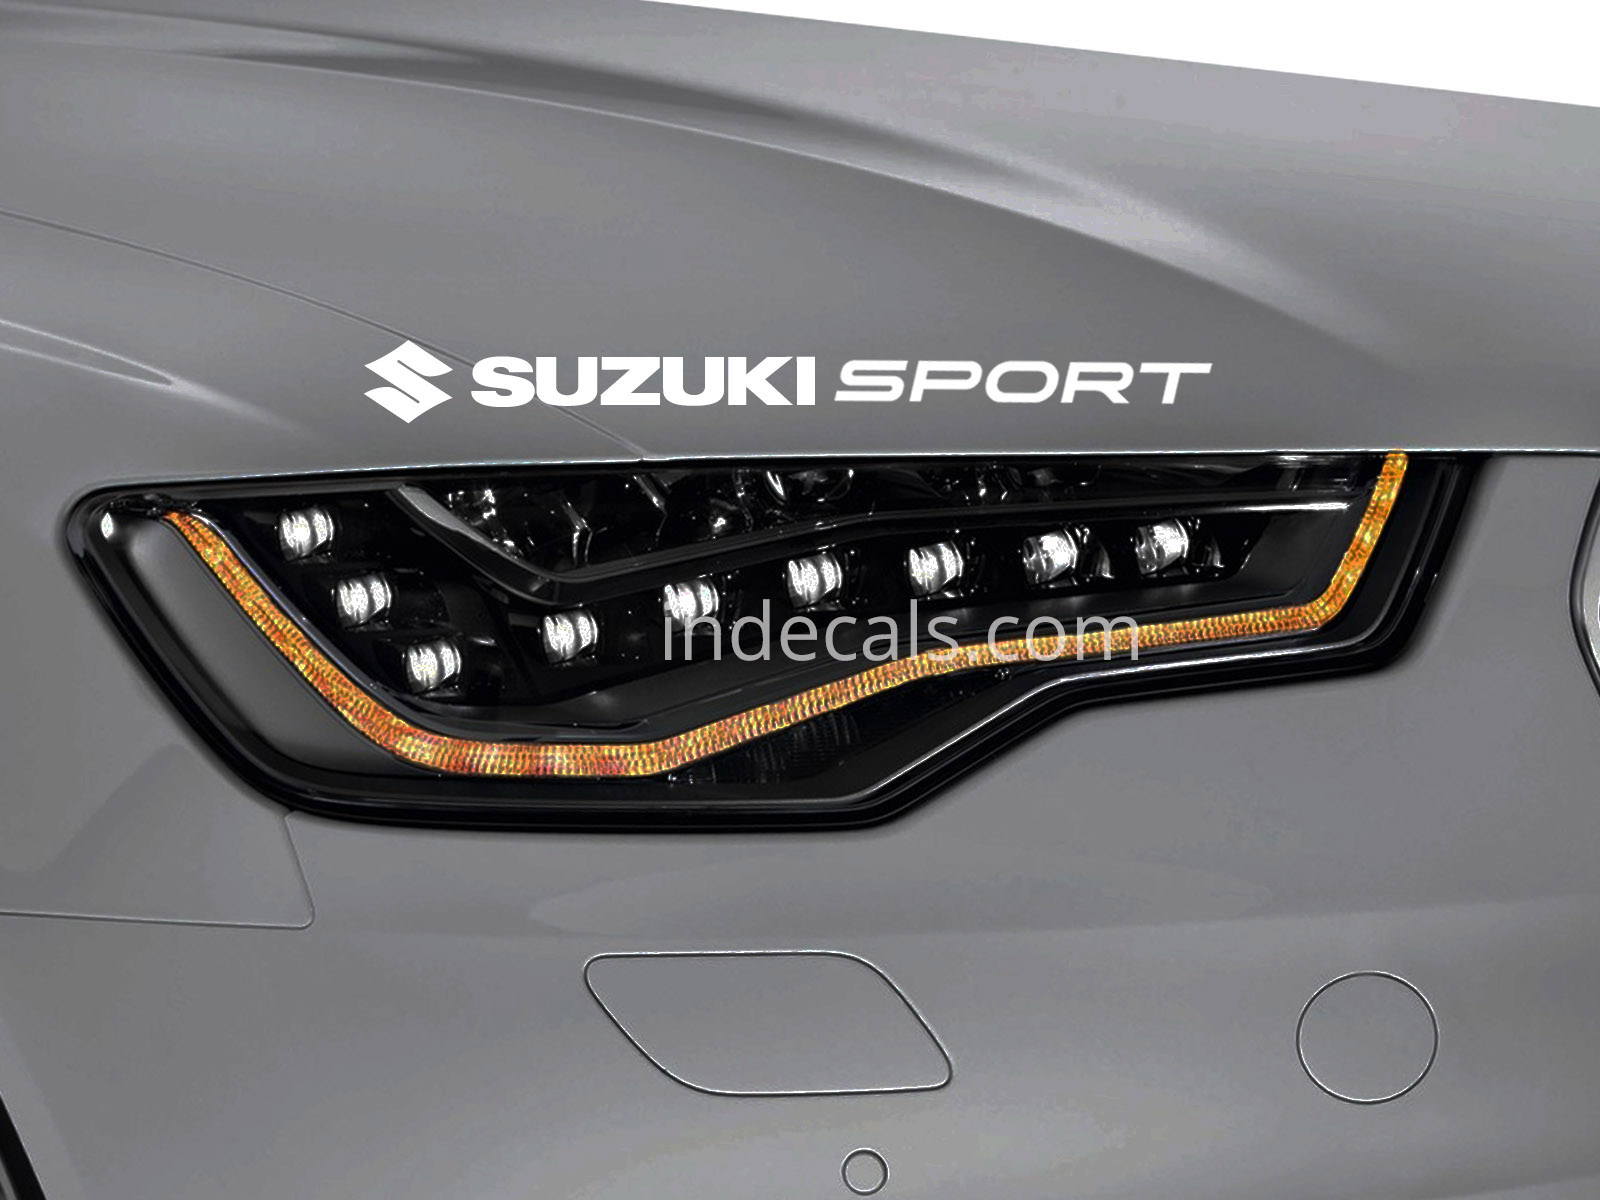 1 x Suzuki Sport Sticker for Eyebrow - White